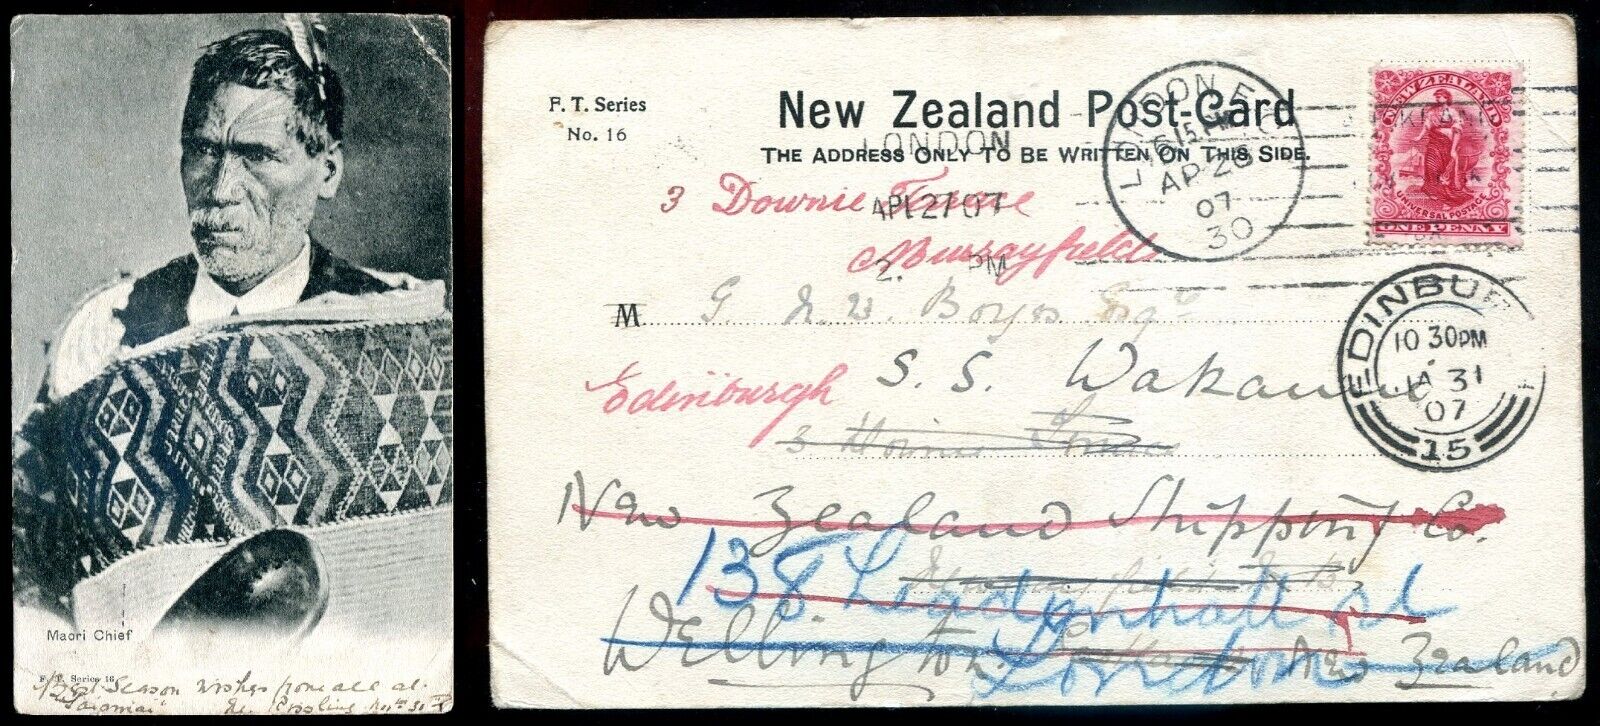 NEW ZEALAND Postcard 1900s Maori Chief Face Tattoo